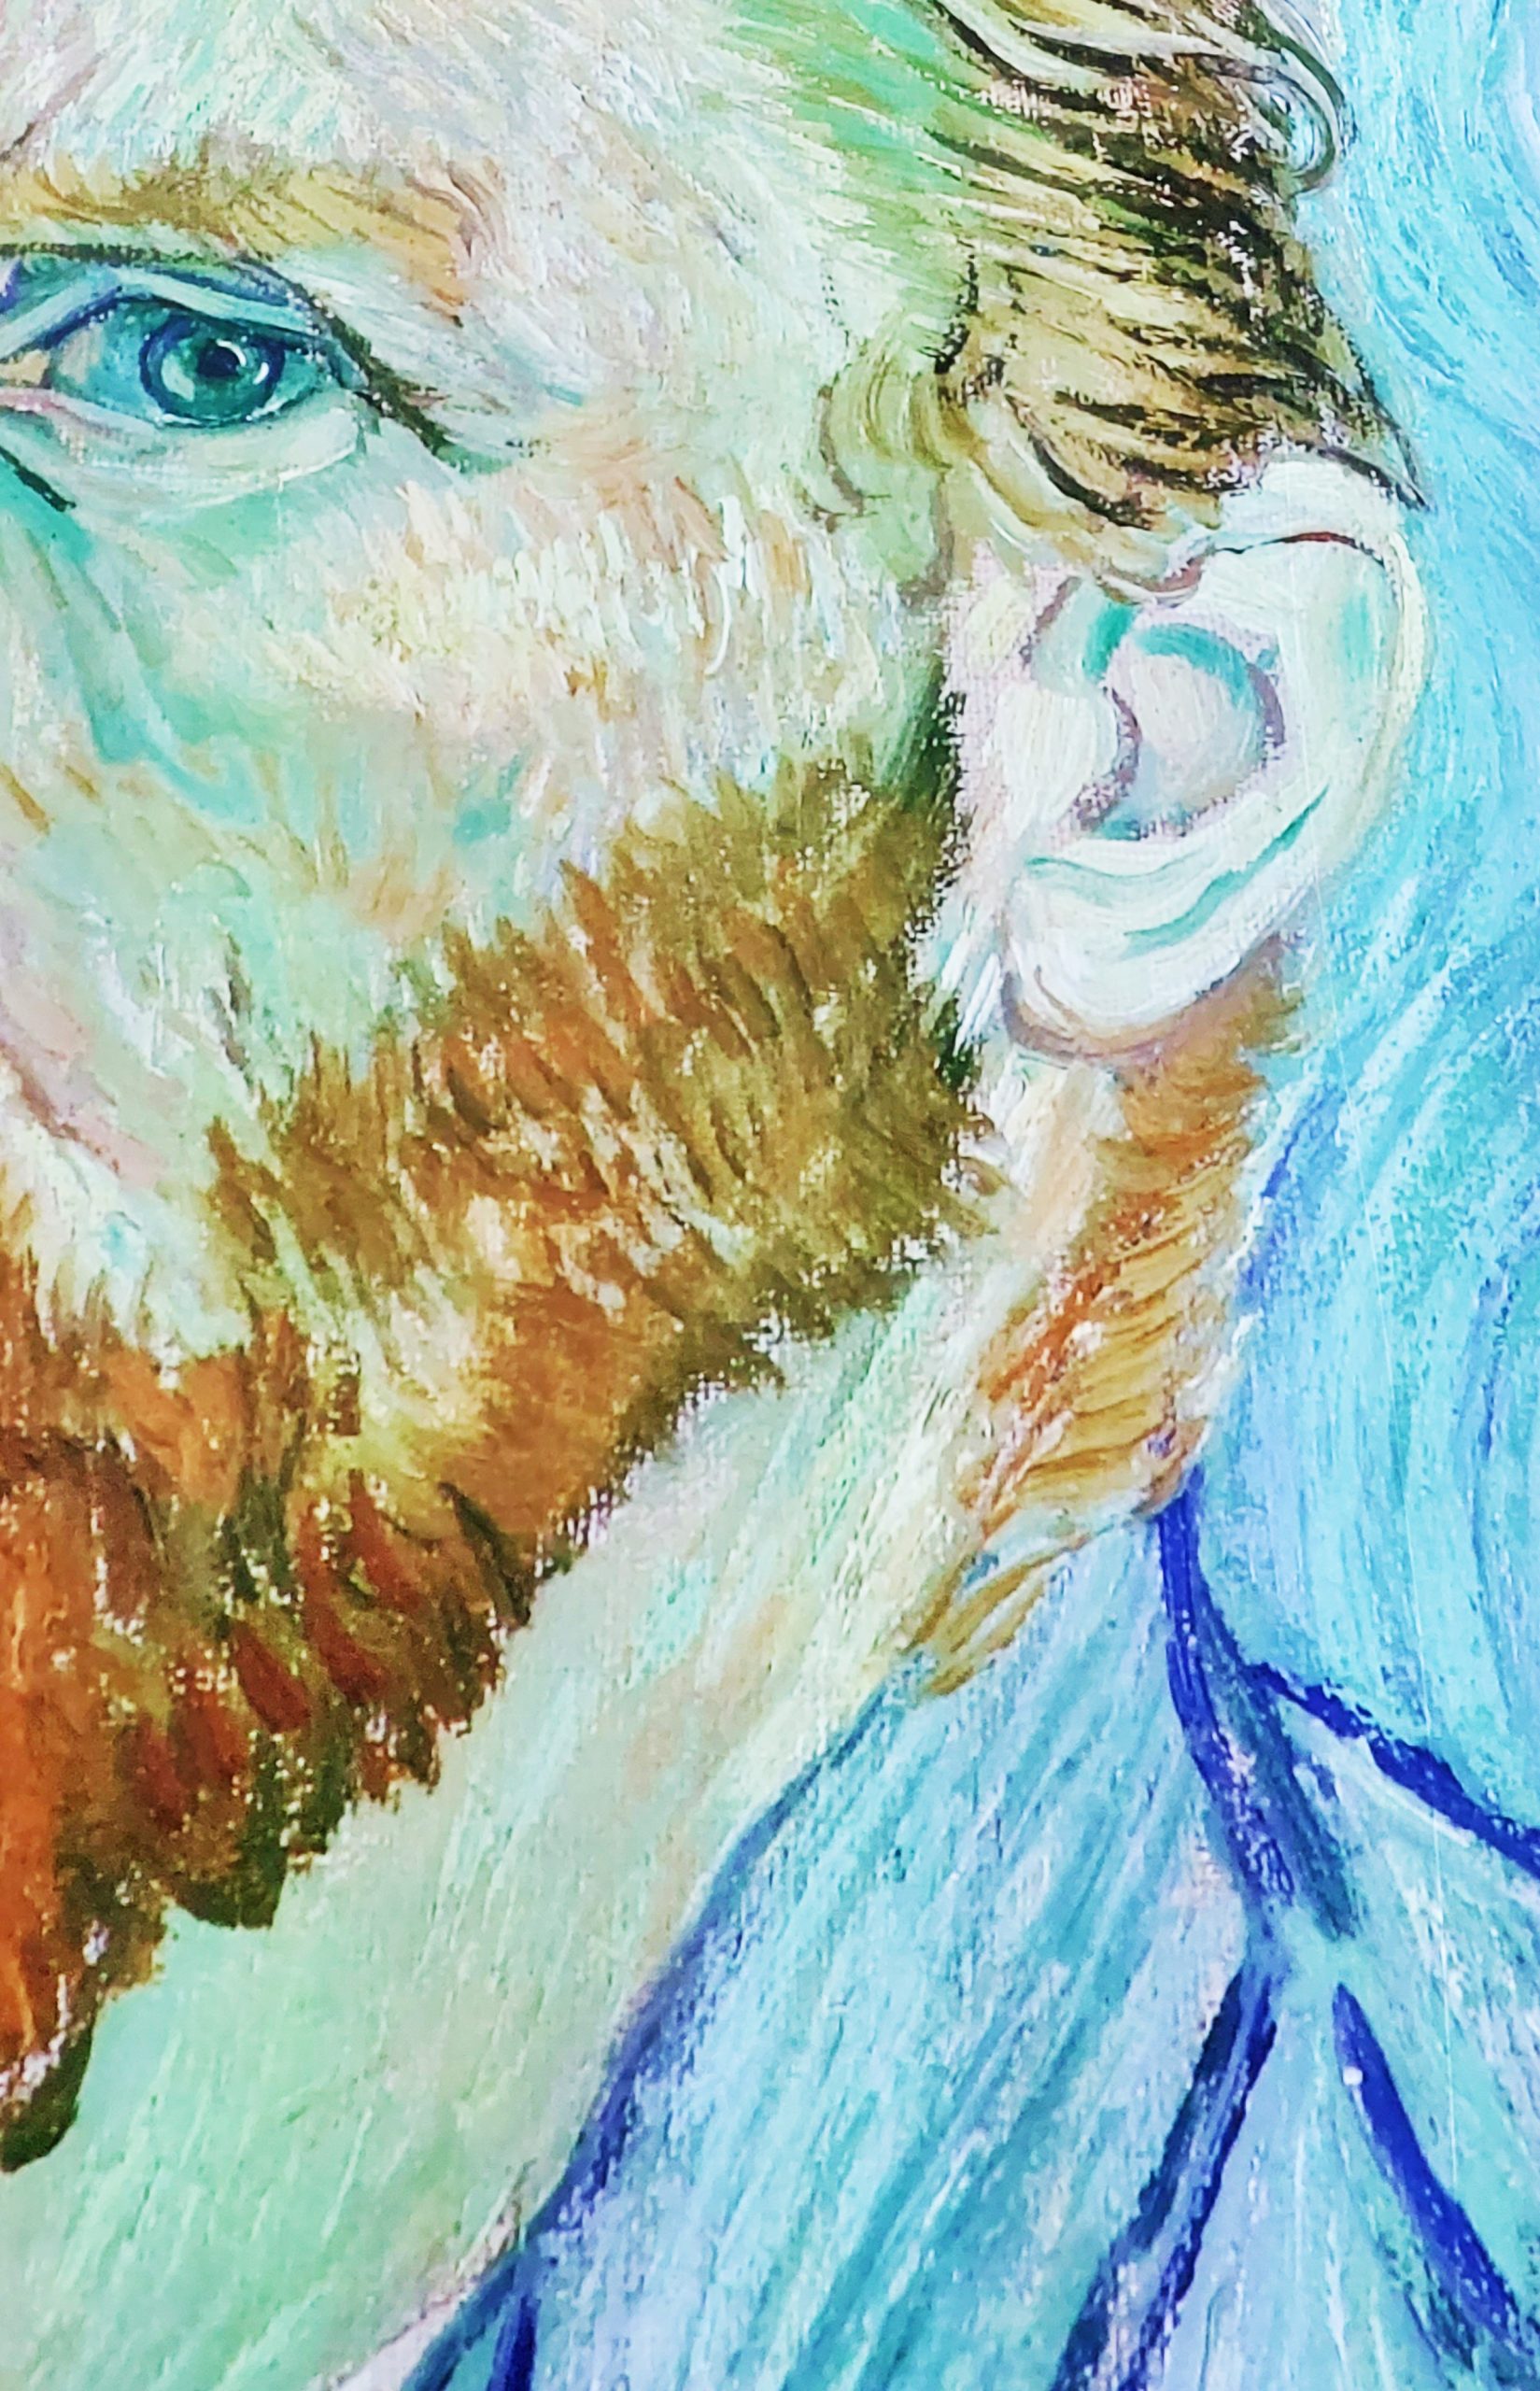 <img src="self.jpg" alt="self portrait of Van Gogh in London"/> 